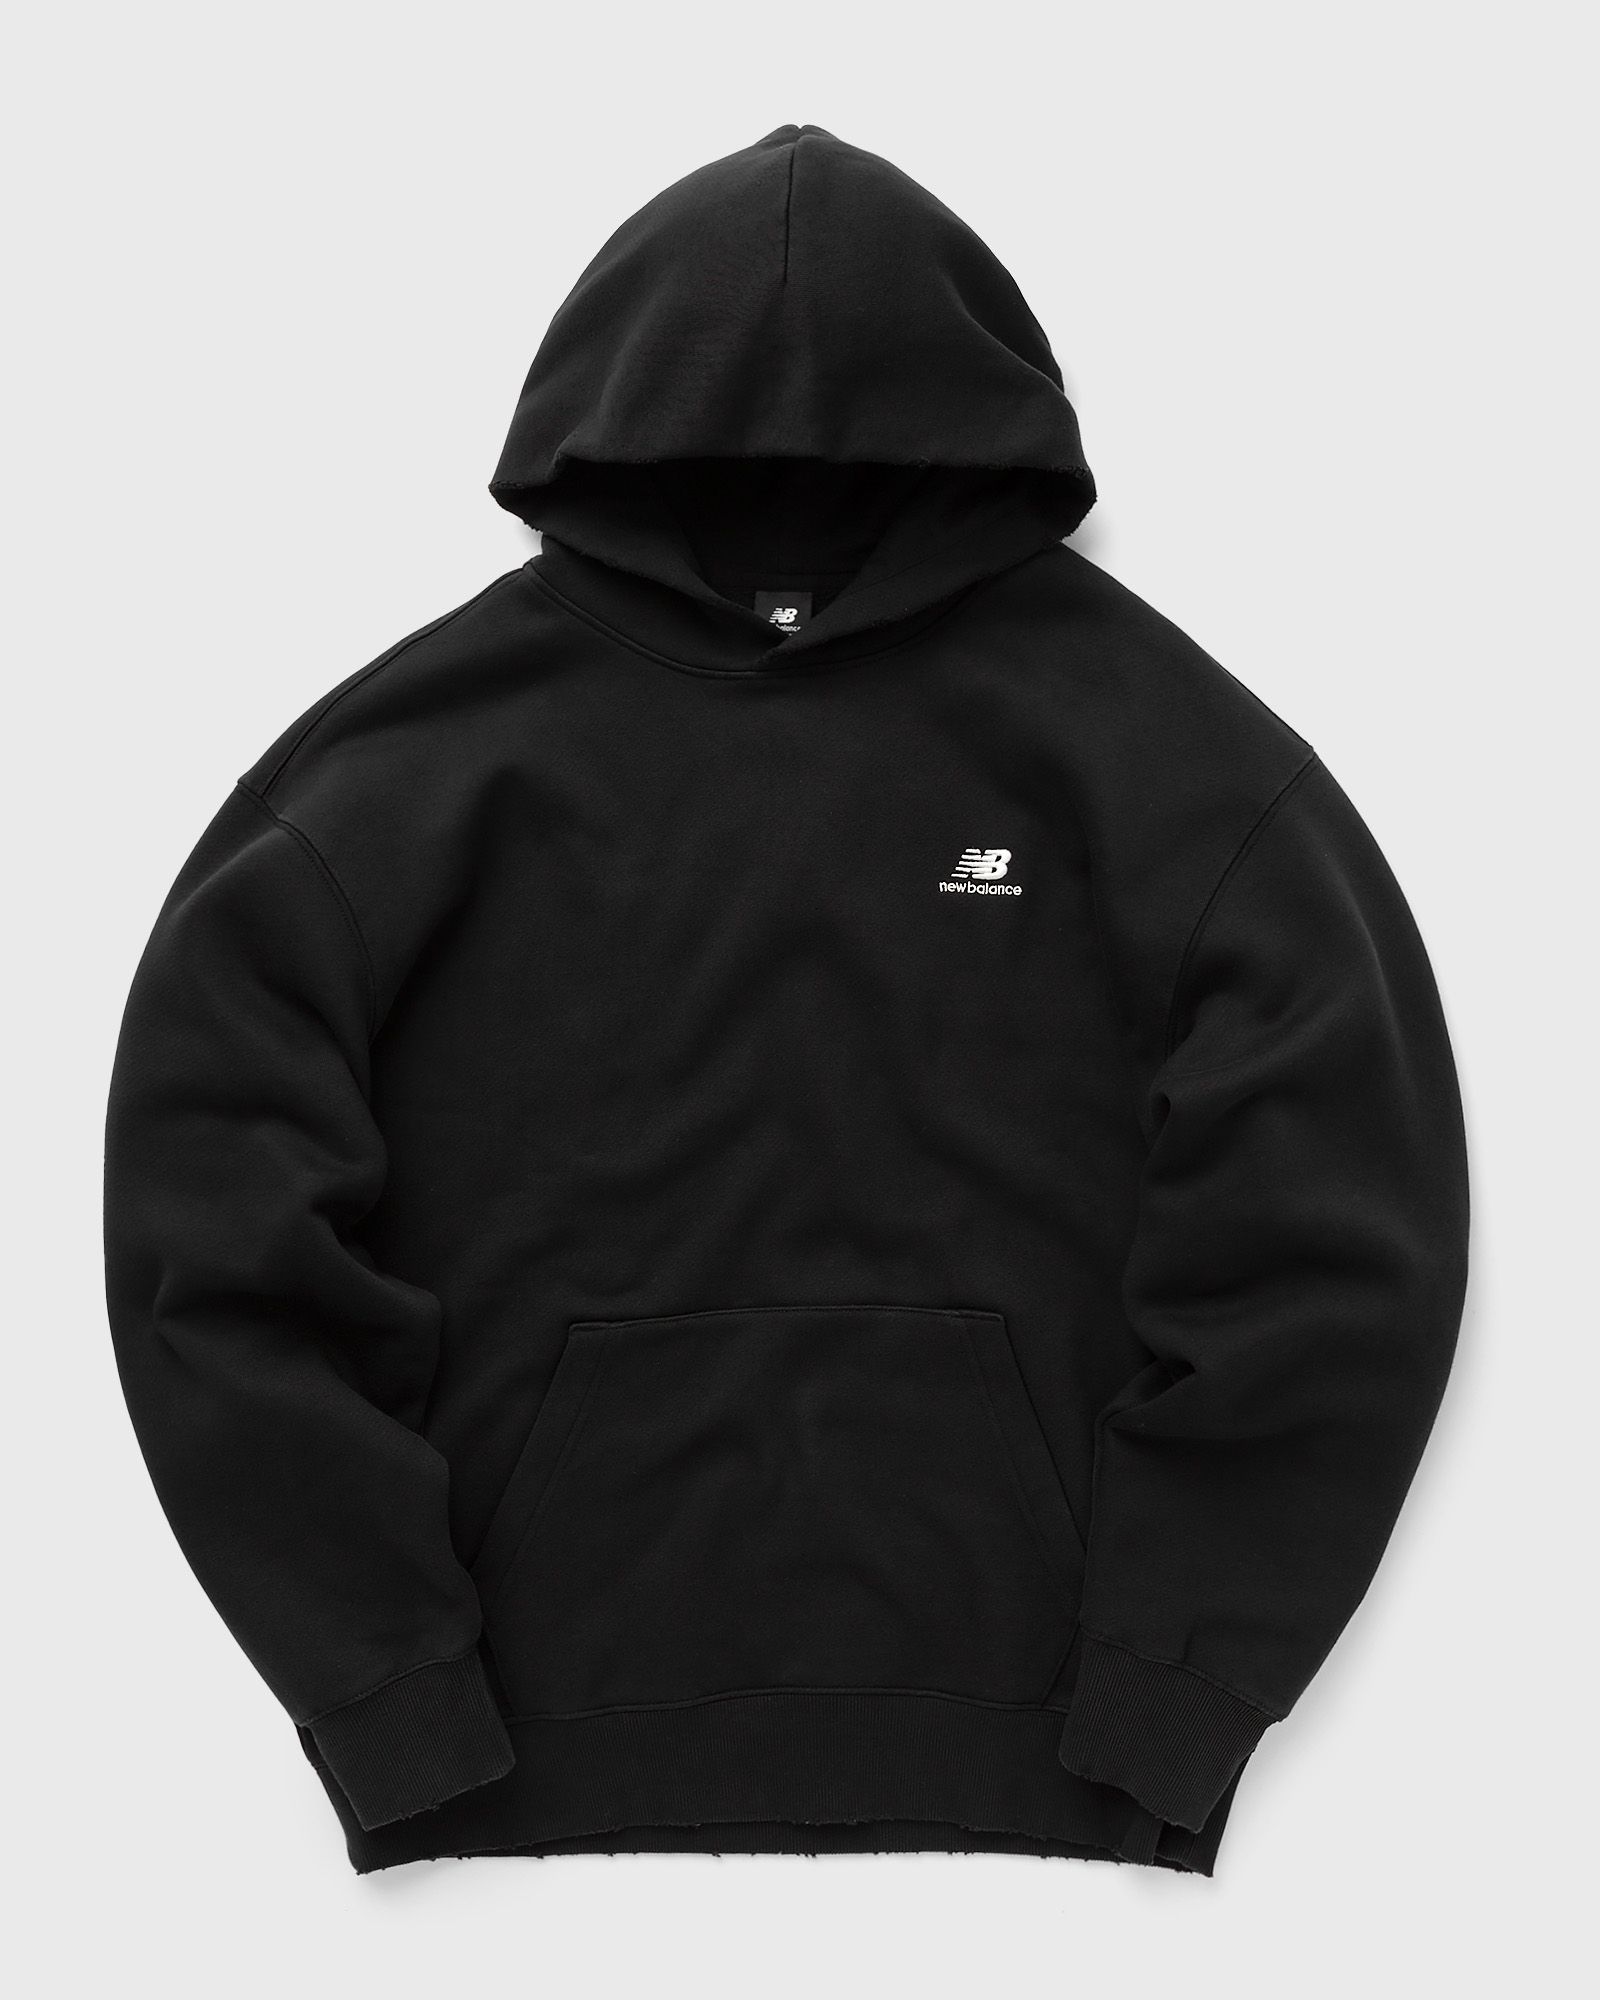 New Balance - hoops fleece hoodie men hoodies black in größe:xl